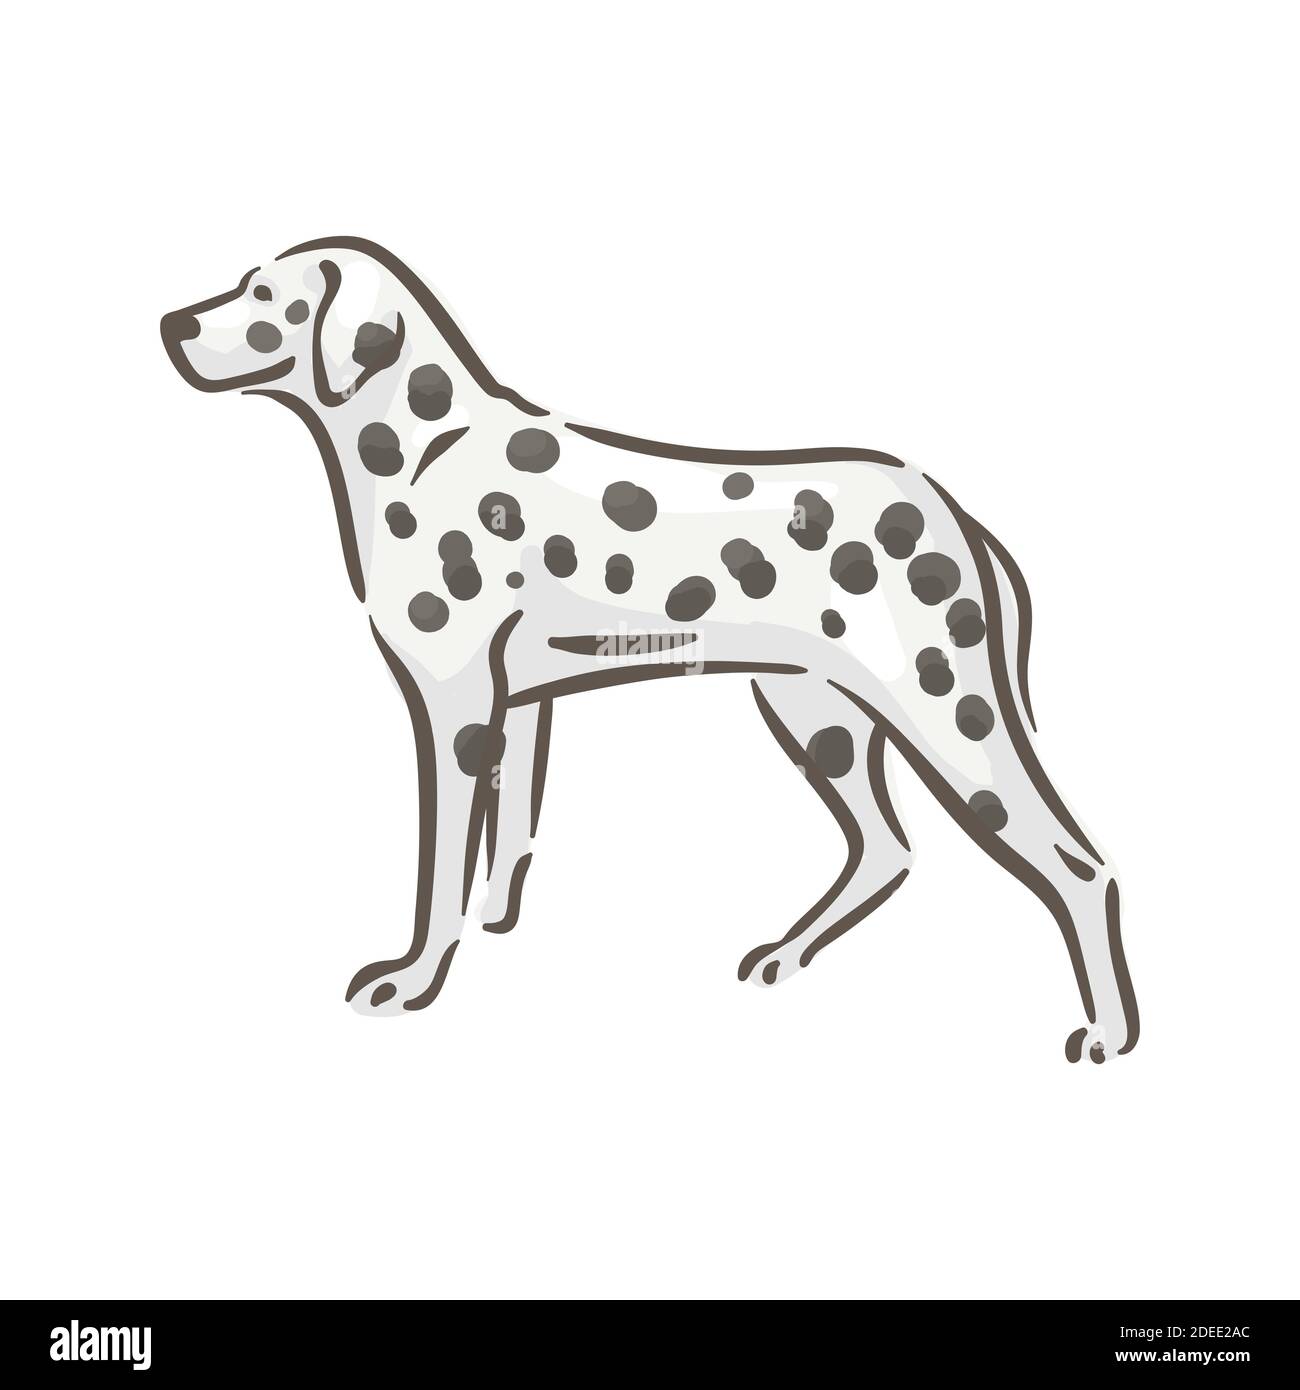 Niedlichen Hund dalmatiner Rasse Stammbaum Vektor Illustration Stock Vektor